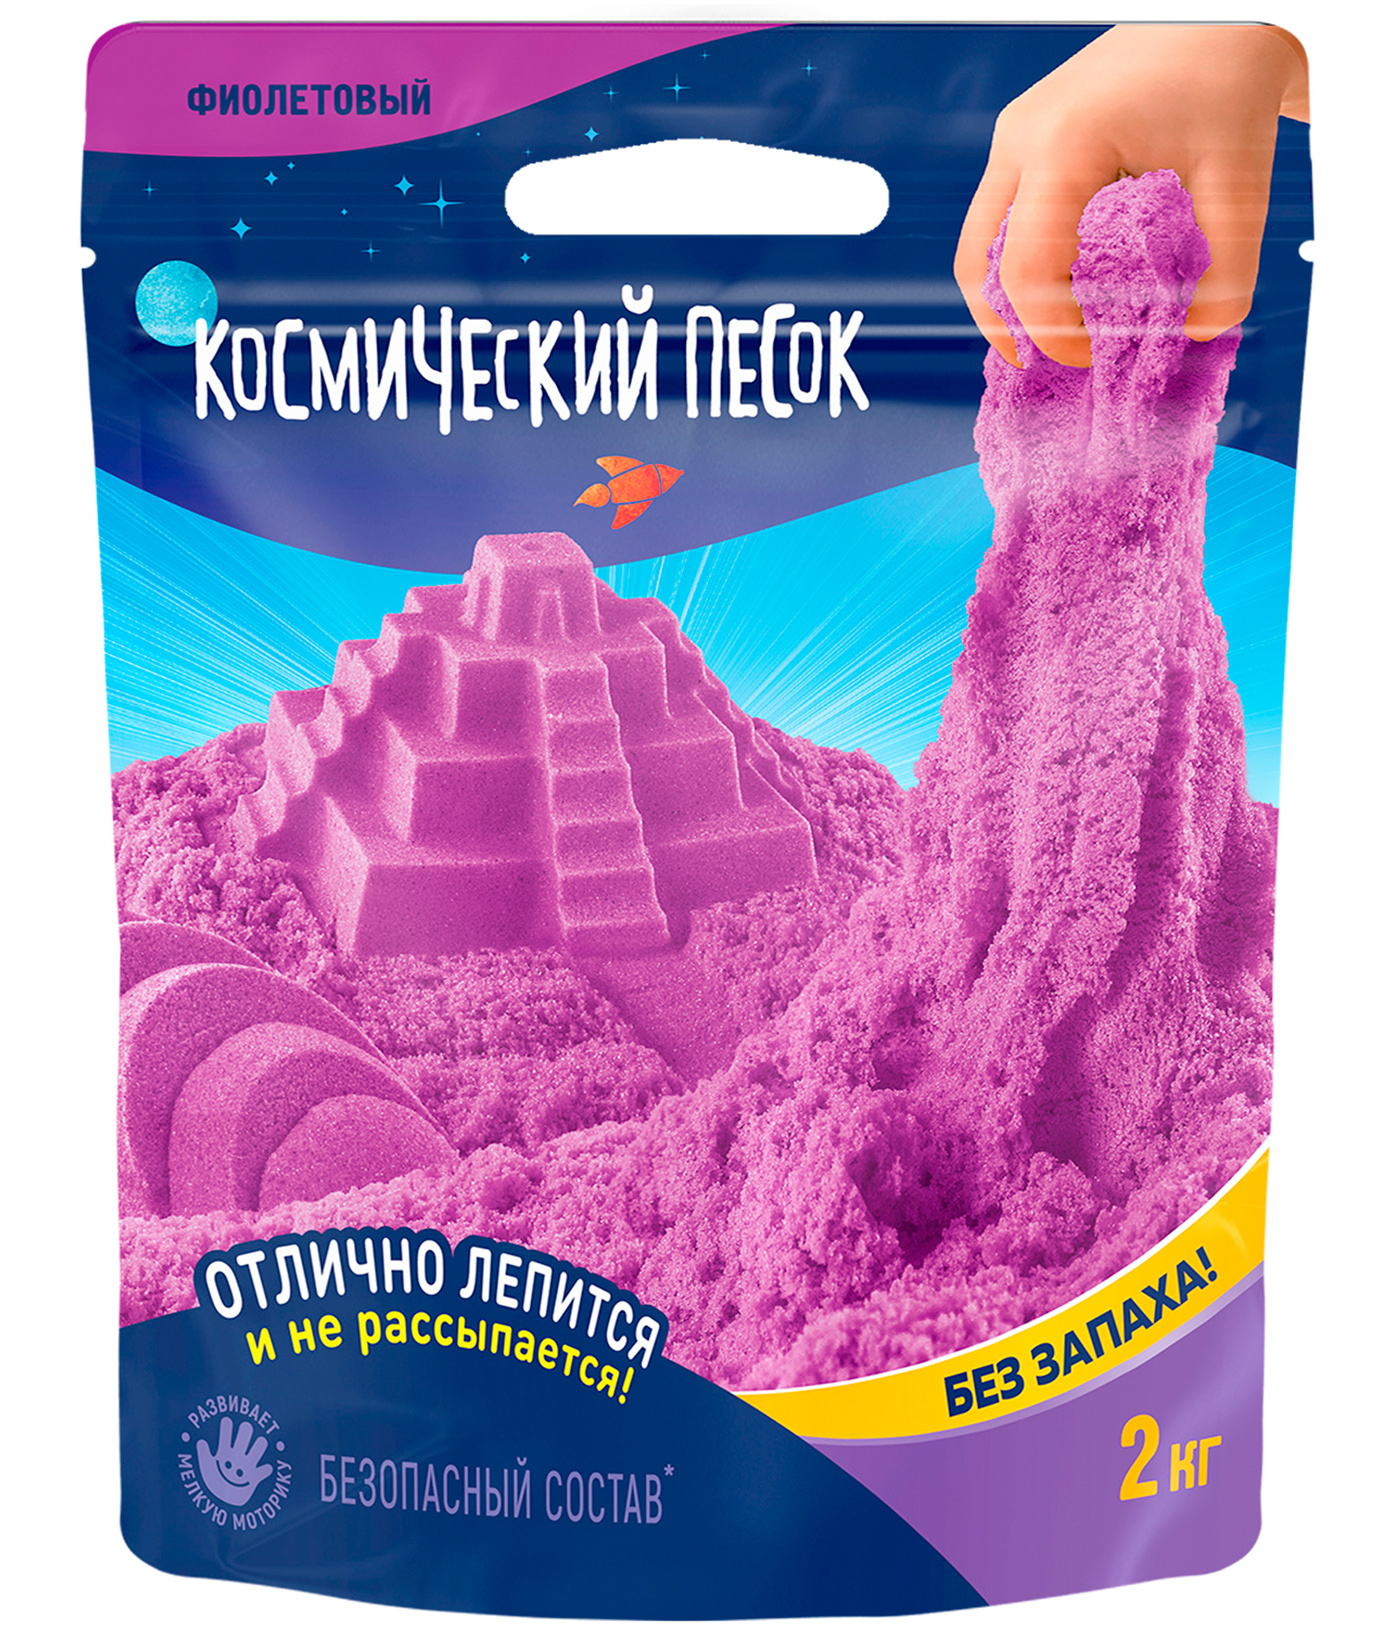 Игрушка для детей Космический песок 2 кг, дой-пак, фиолетовый